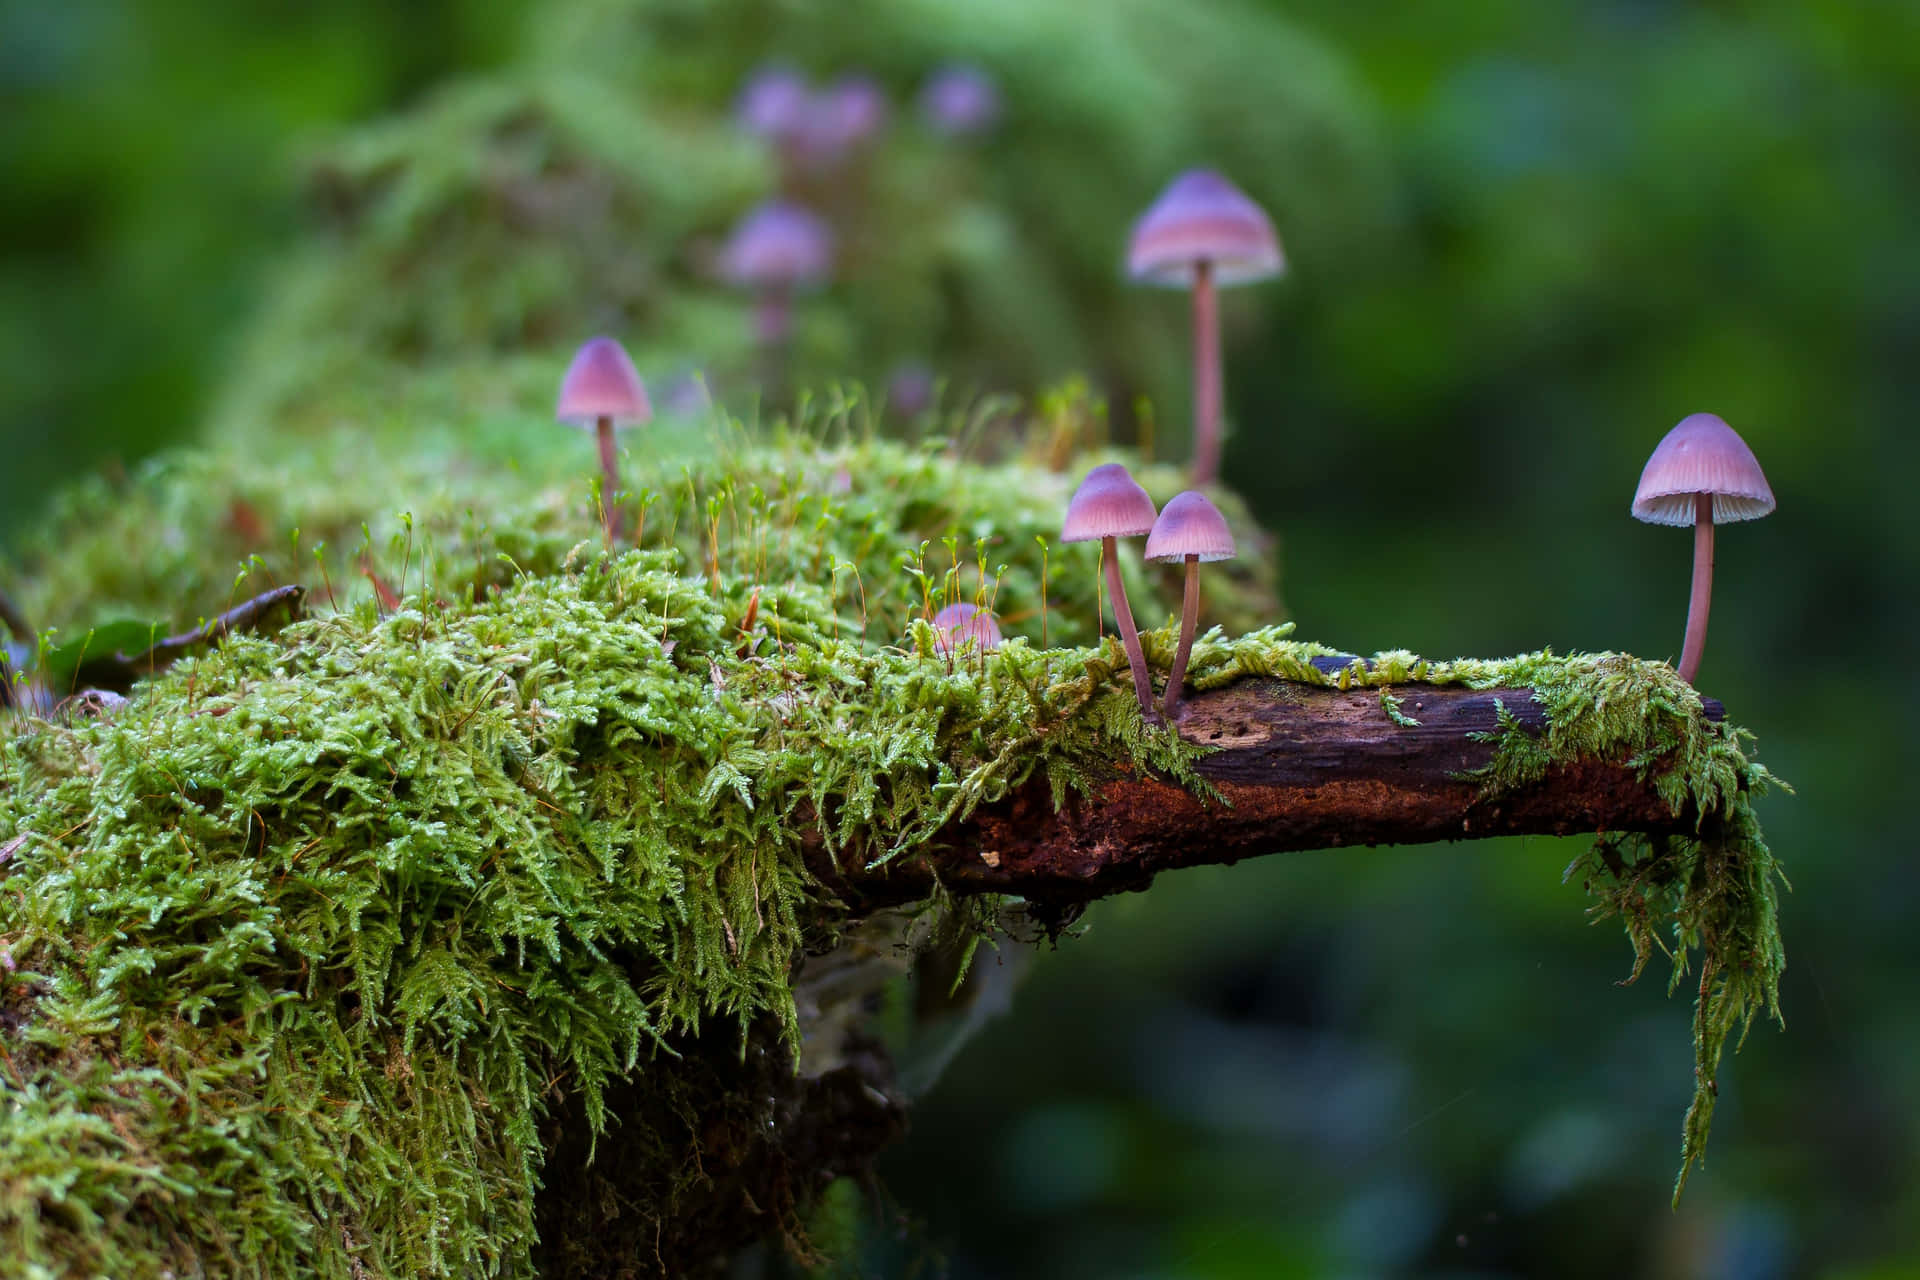 Take a walk through a magical Mushroom Forest